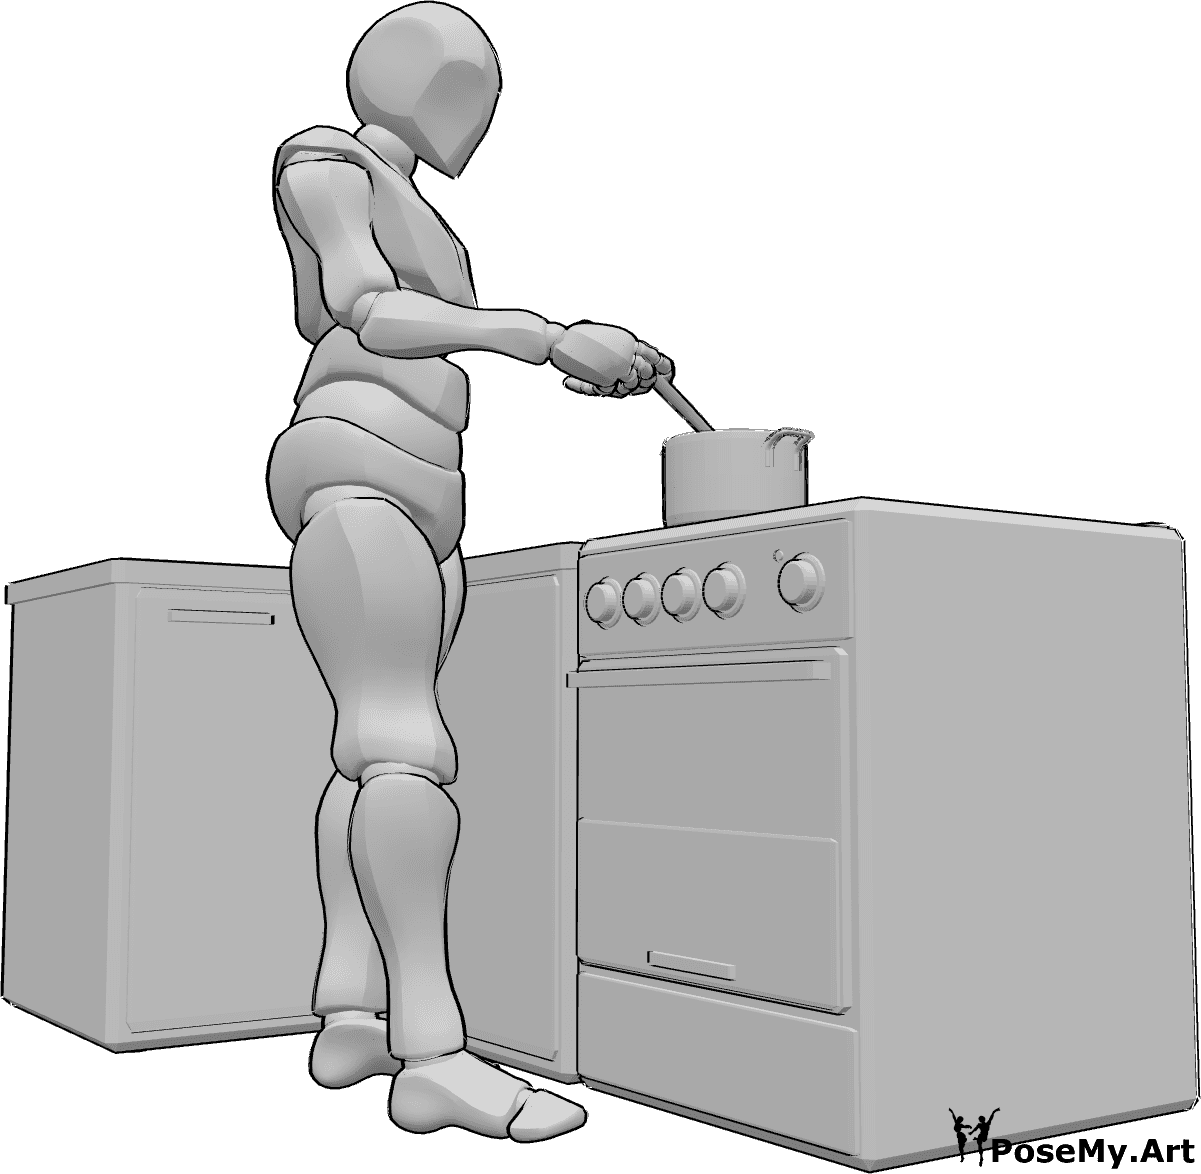 Référence des poses- Pose de cuisine masculine - L'homme est debout, en train de faire cuire quelque chose dans une marmite et de remuer avec une cuillère en bois.